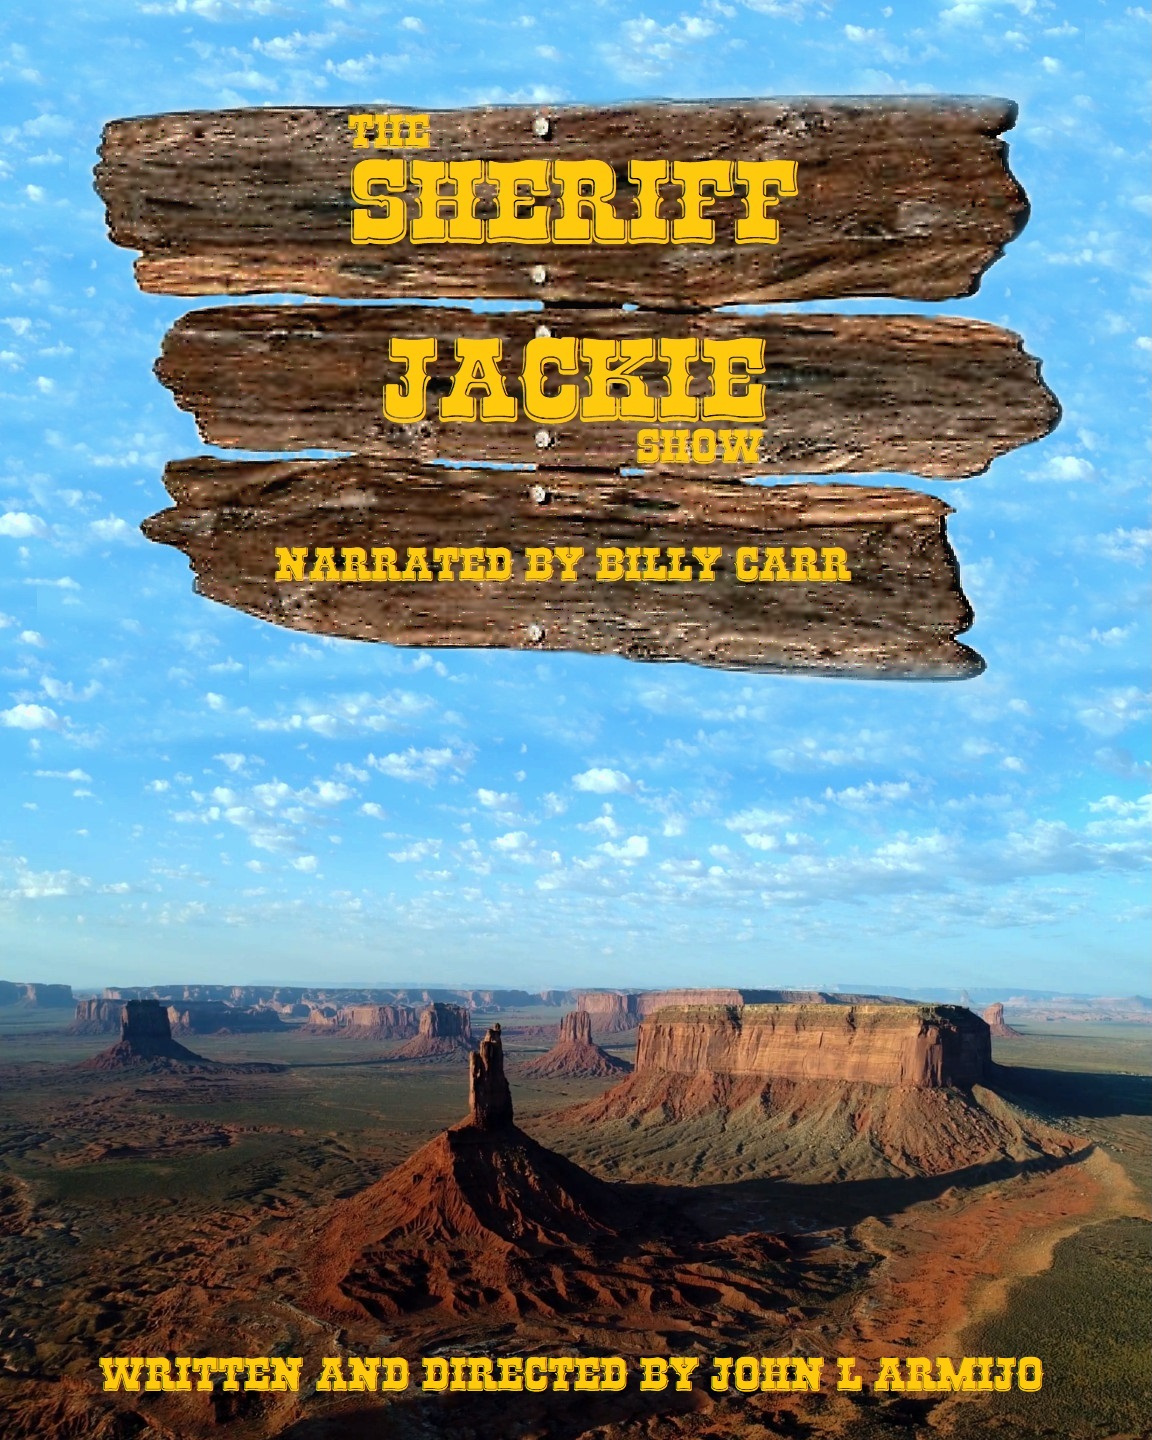 The Sheriff Jackie Show